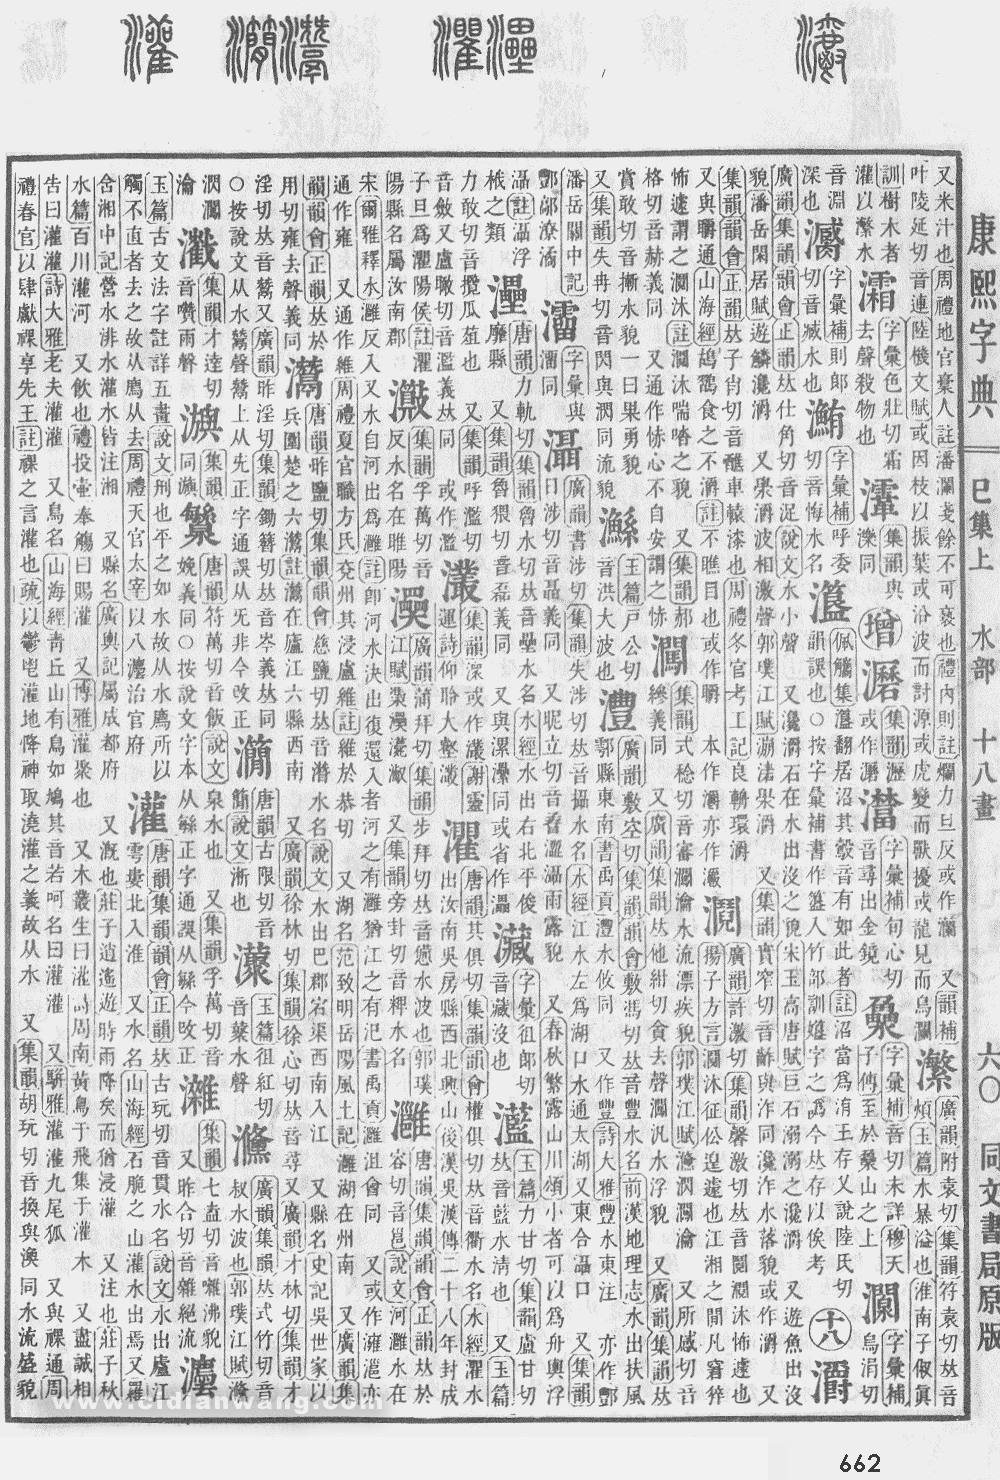 康熙字典掃描版第662頁